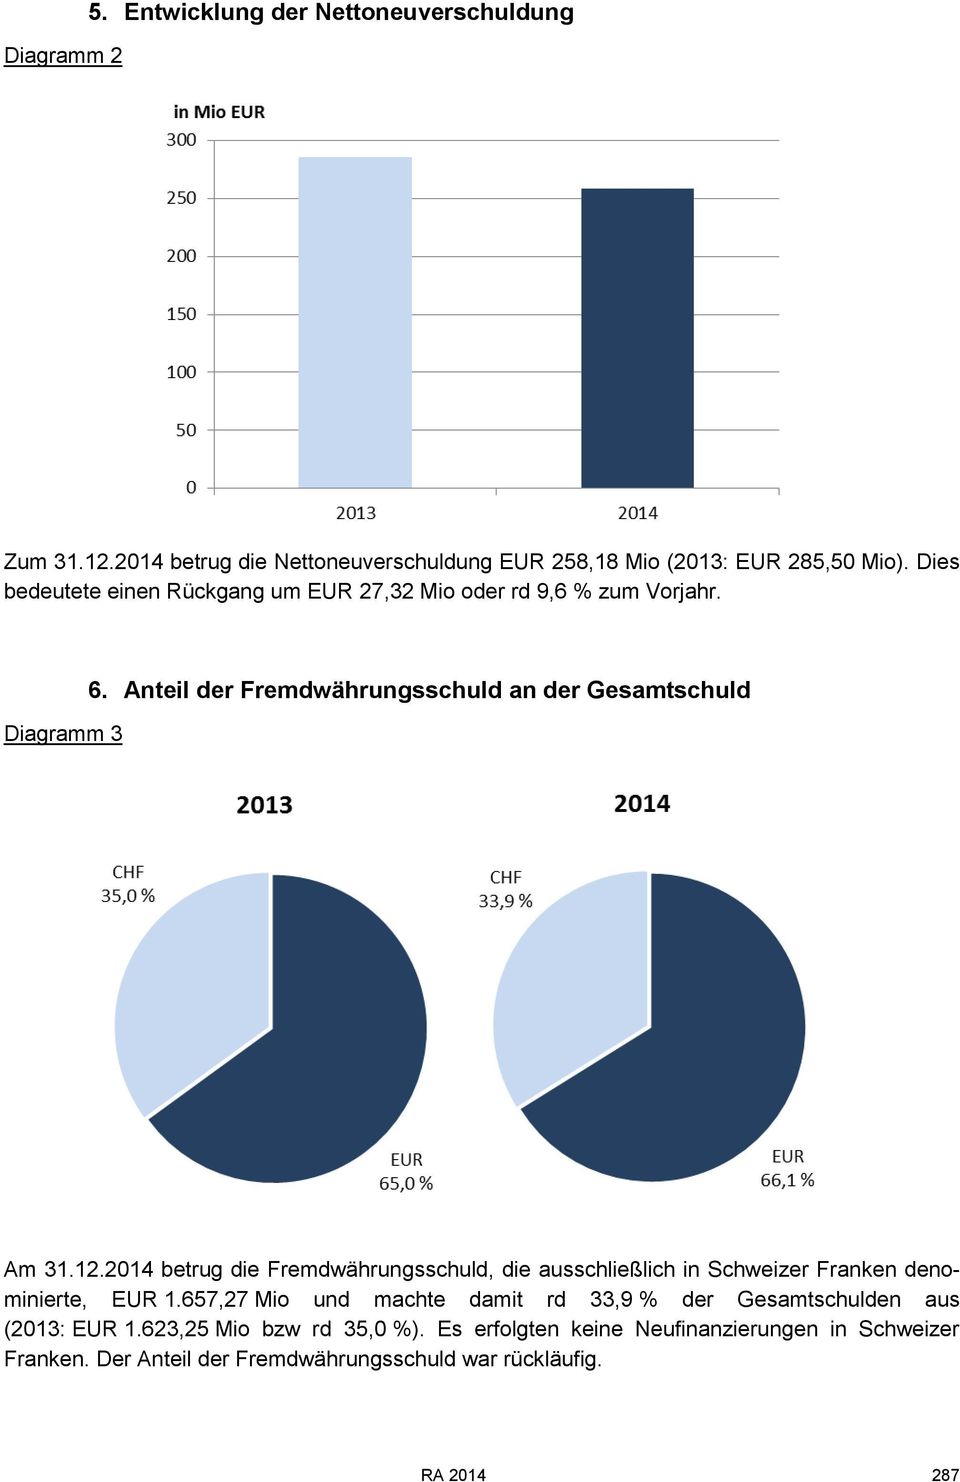 2014 betrug die Fremdwährungsschuld, die ausschließlich in Schweizer Franken denominierte, EUR 1.